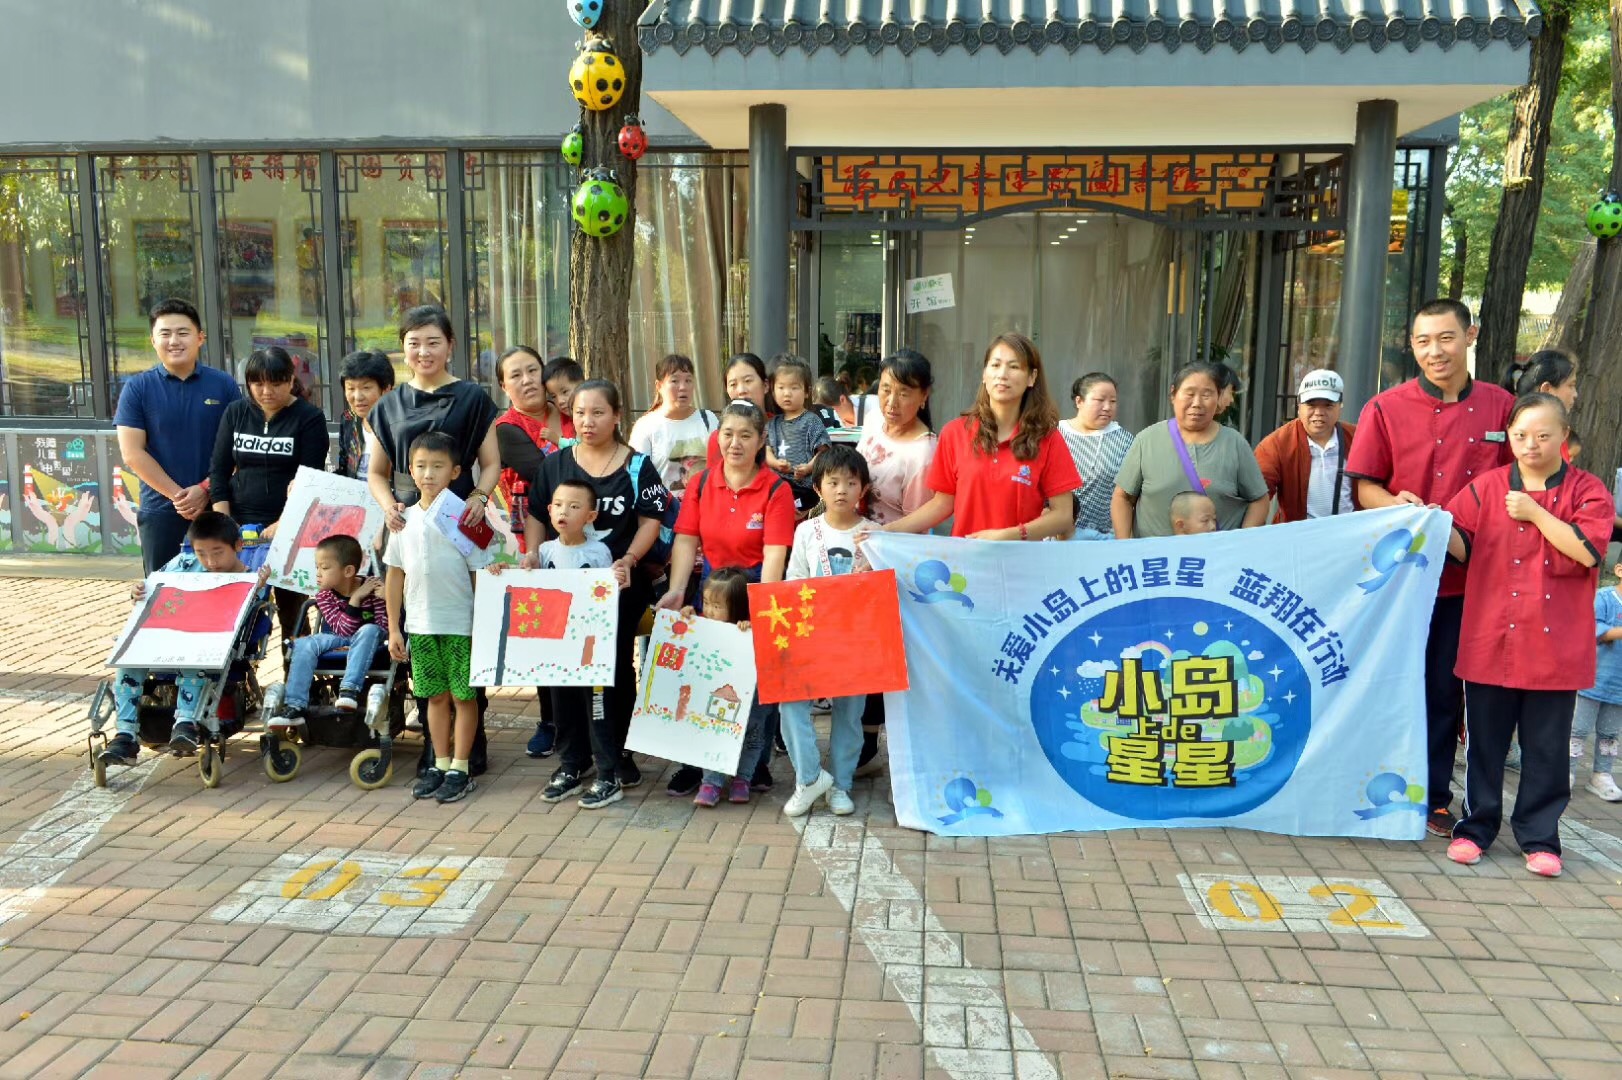 【2019年9月】墨境轩带学生参加第一届残障儿童电影周活动 展览 第1张